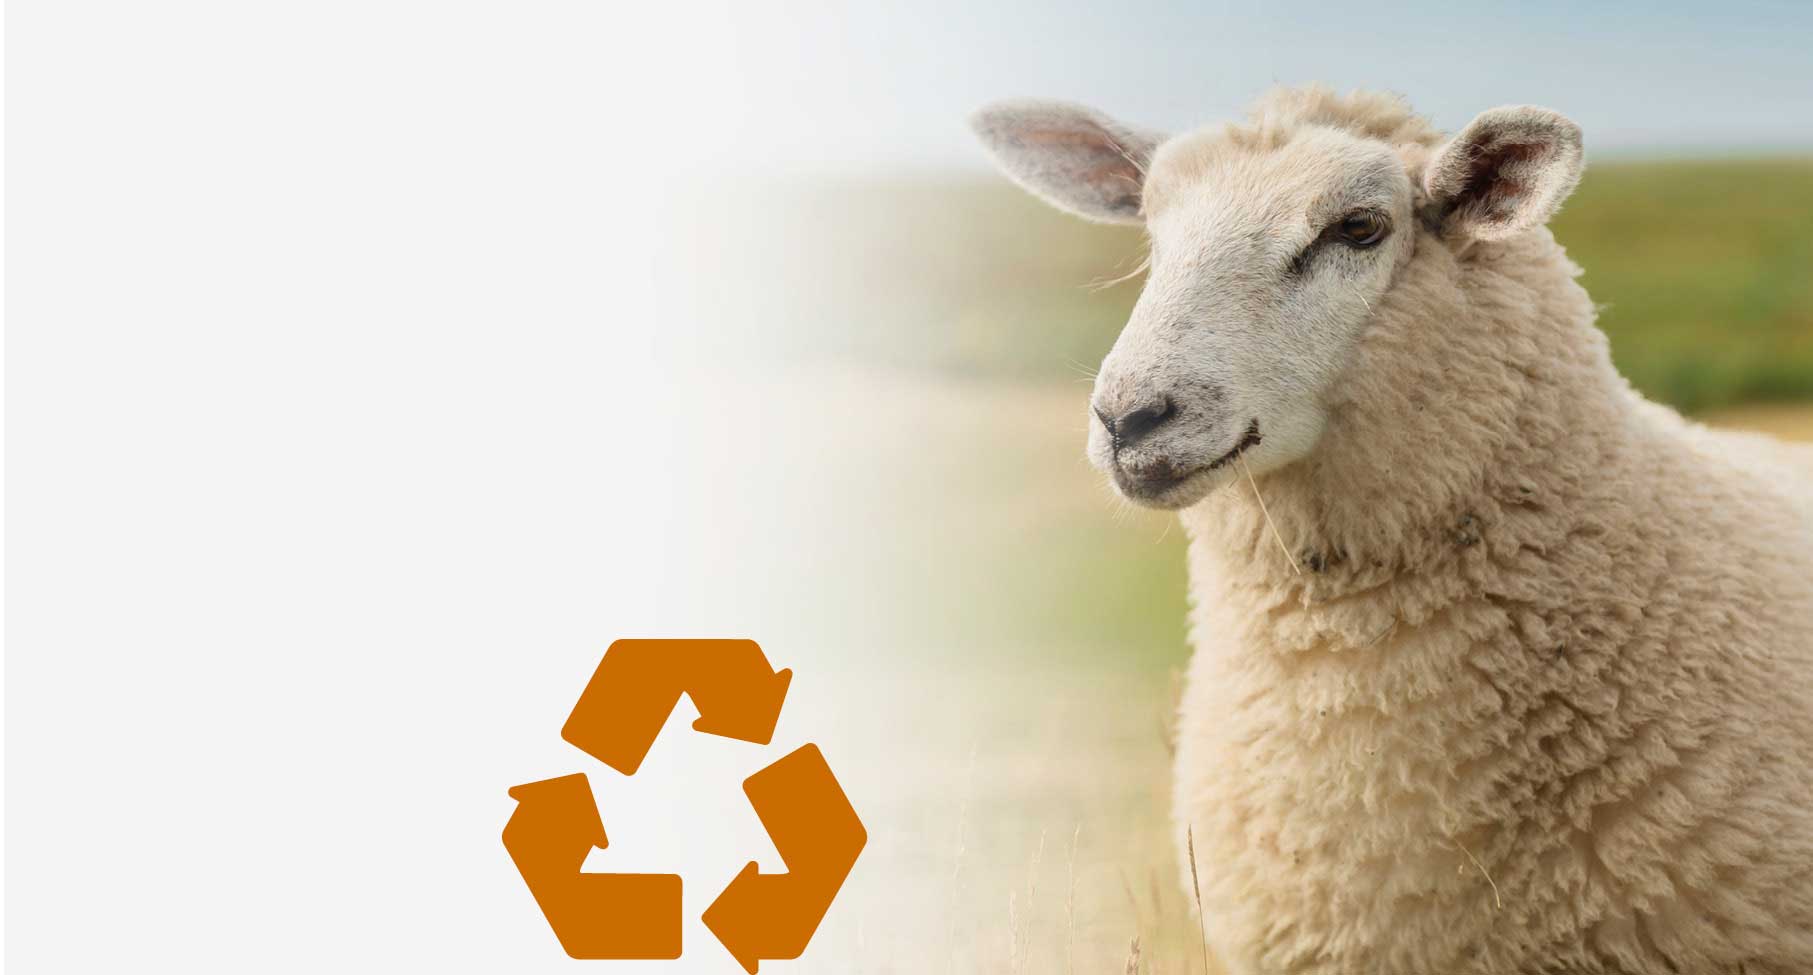 Ökologisch & Gesund

Warum ist dämmen mit
Schafwolle gesund
und nachhaltig?